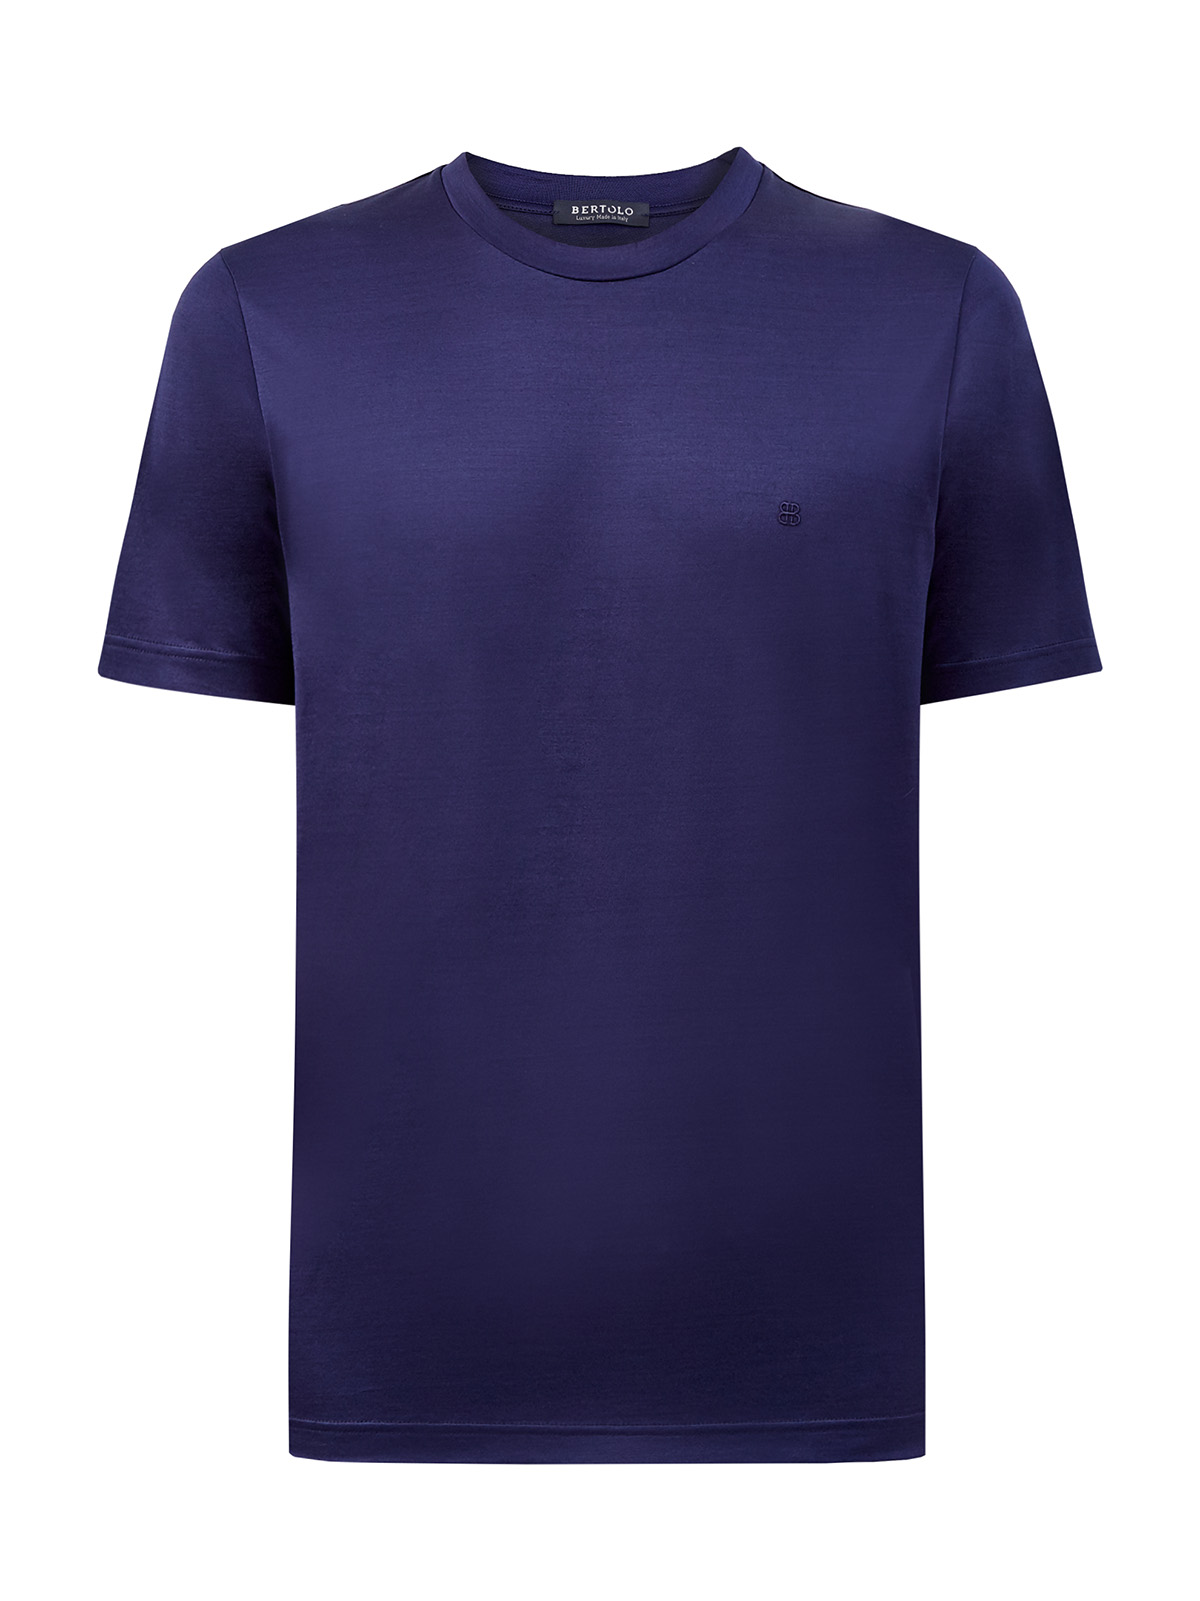 Однотонная футболка из гладкого хлопка с логотипом BERTOLO CASHMERE, цвет синий, размер 50;52;54;56;58;60;48 - фото 1